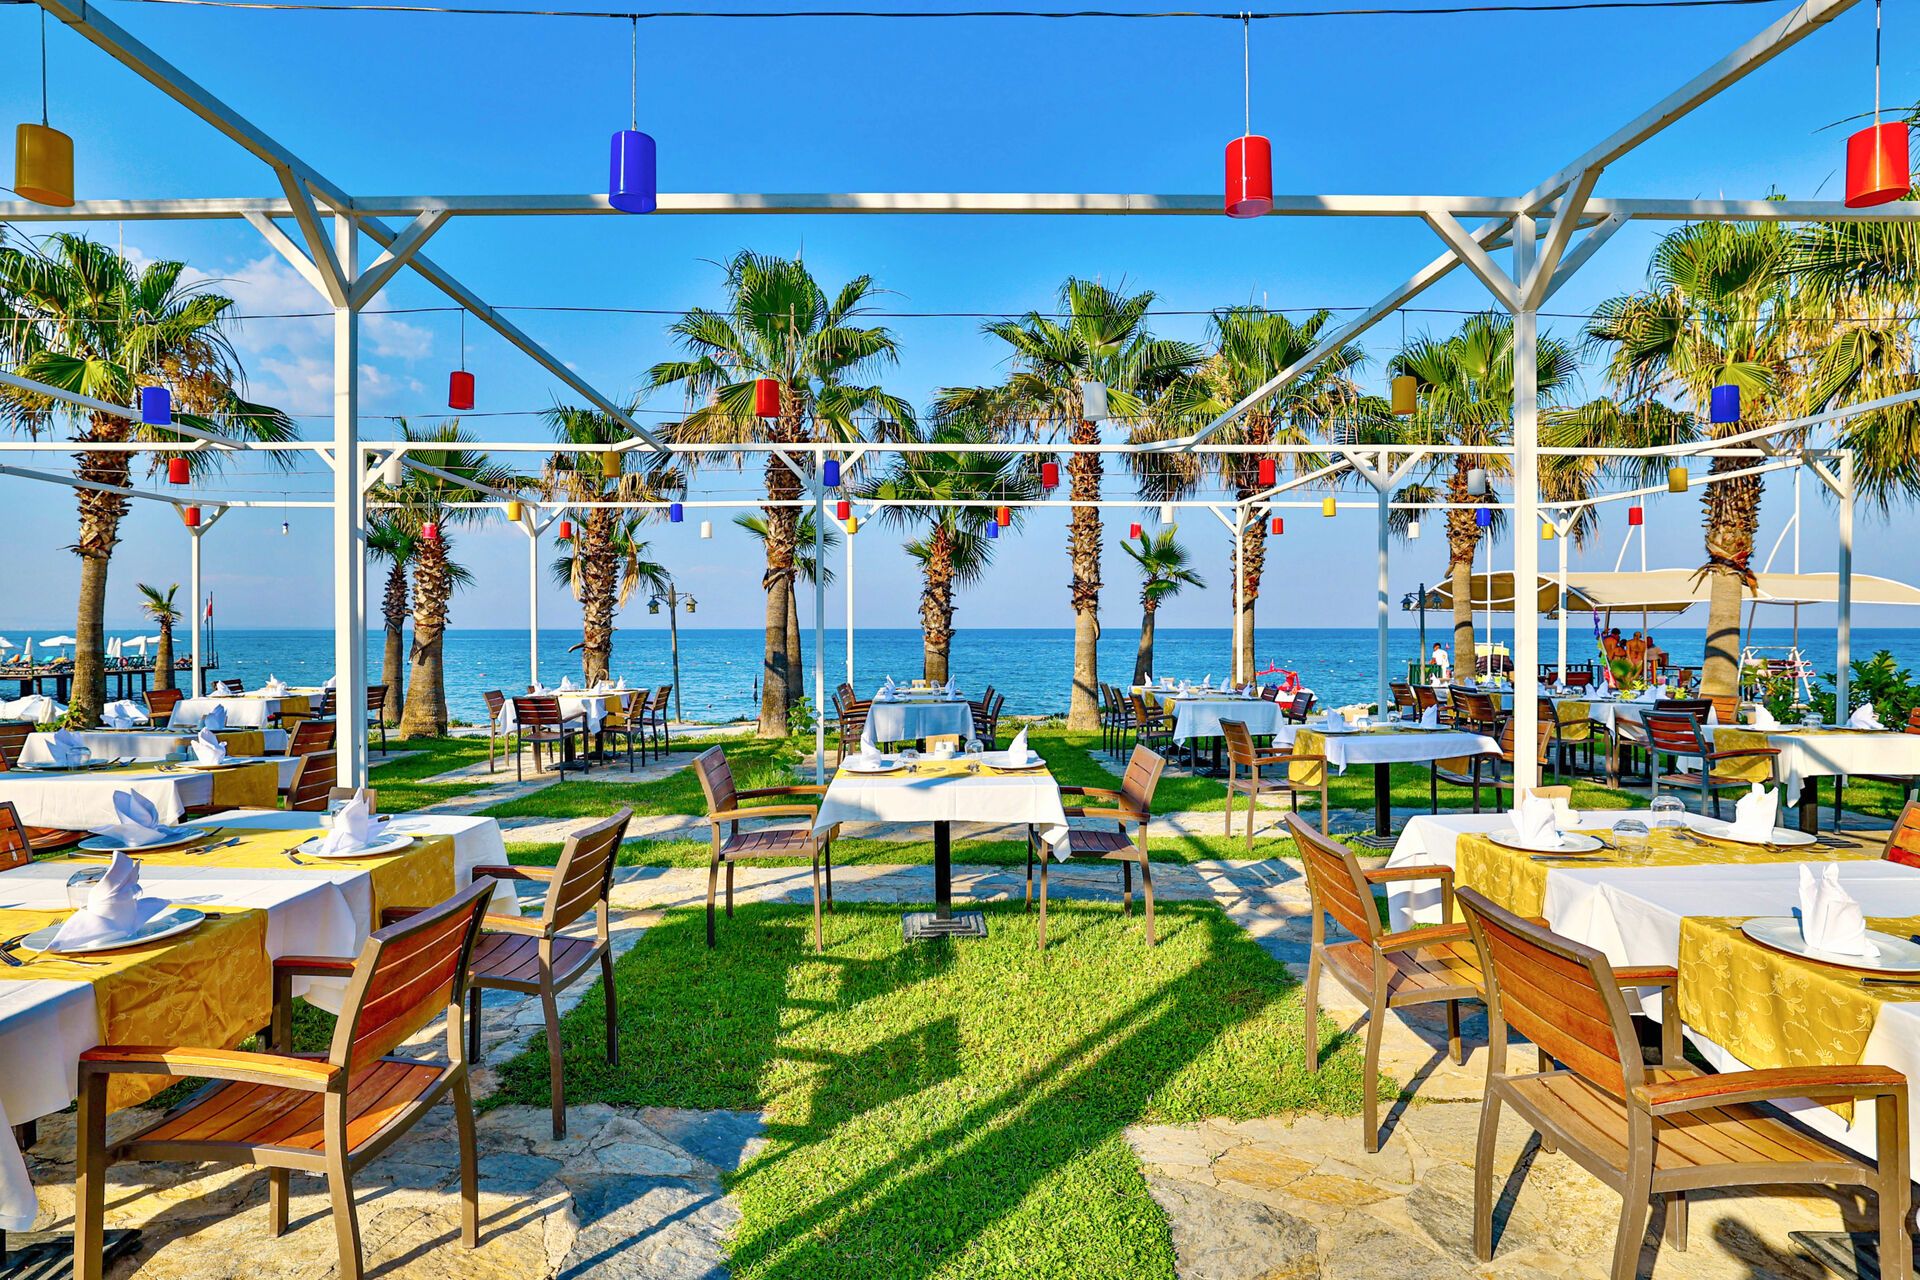 Turquie - Kemer - Hôtel Crystal Flora Beach Resort 5*